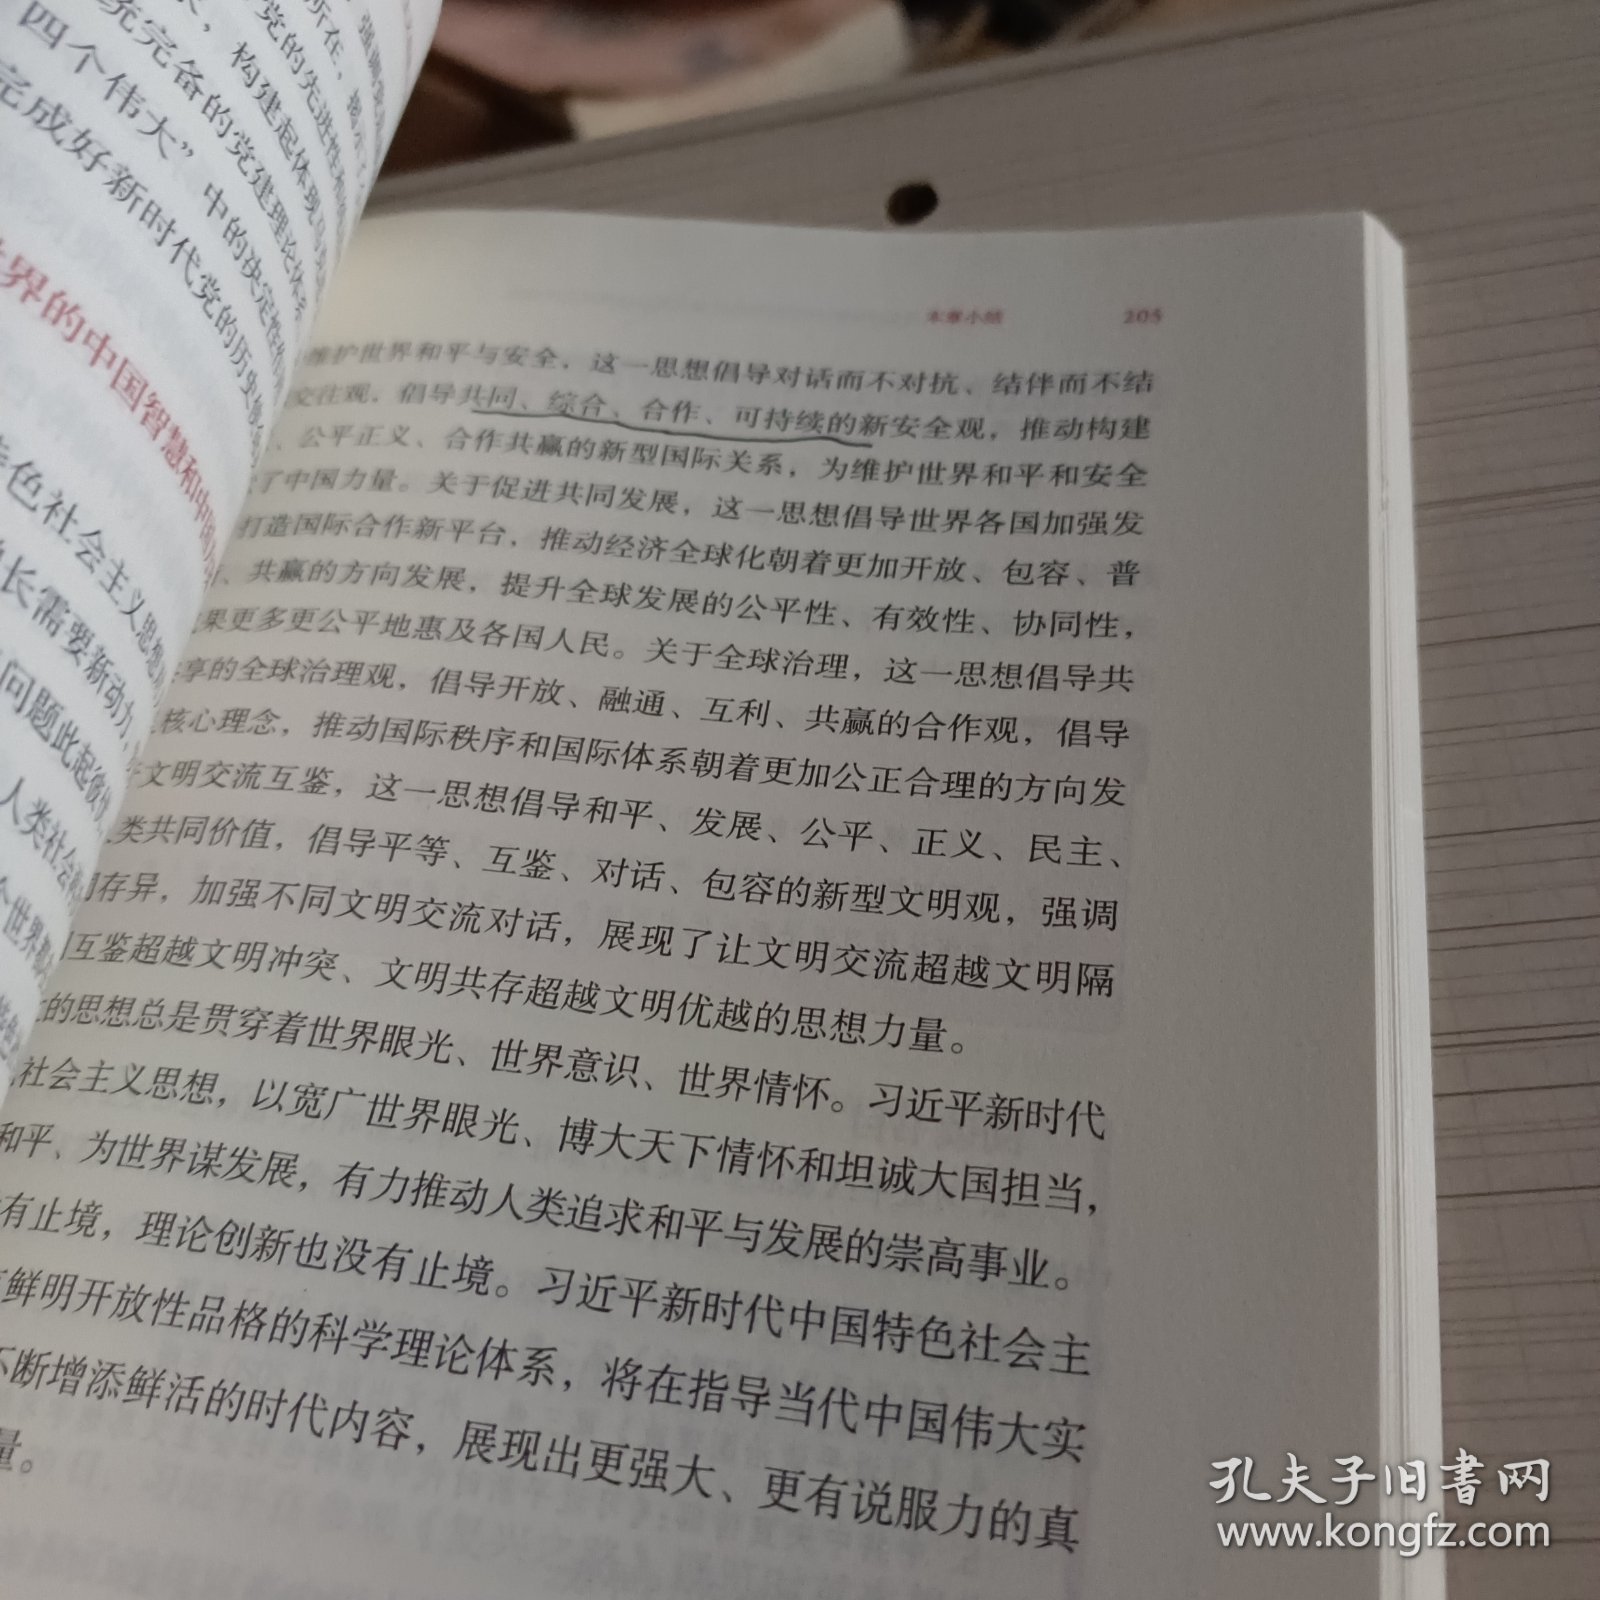 毛泽东思想和中国特色社会主义理论体系概论（2021年版）（书内有刬线）